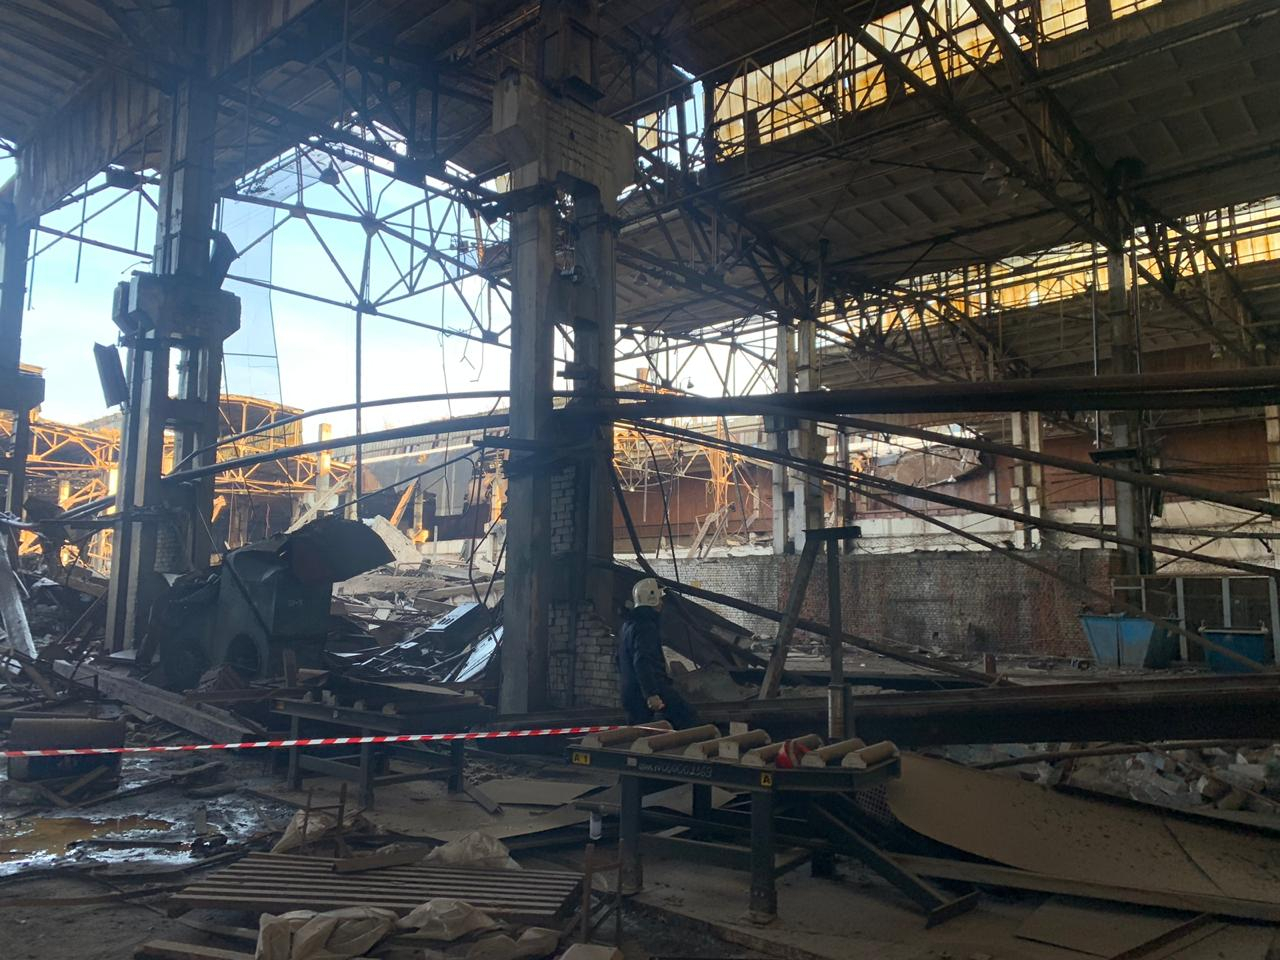 Кровля обрушилась в одном из цехов завода "Дзержинскхиммаш": есть погибшие (ФОТО)